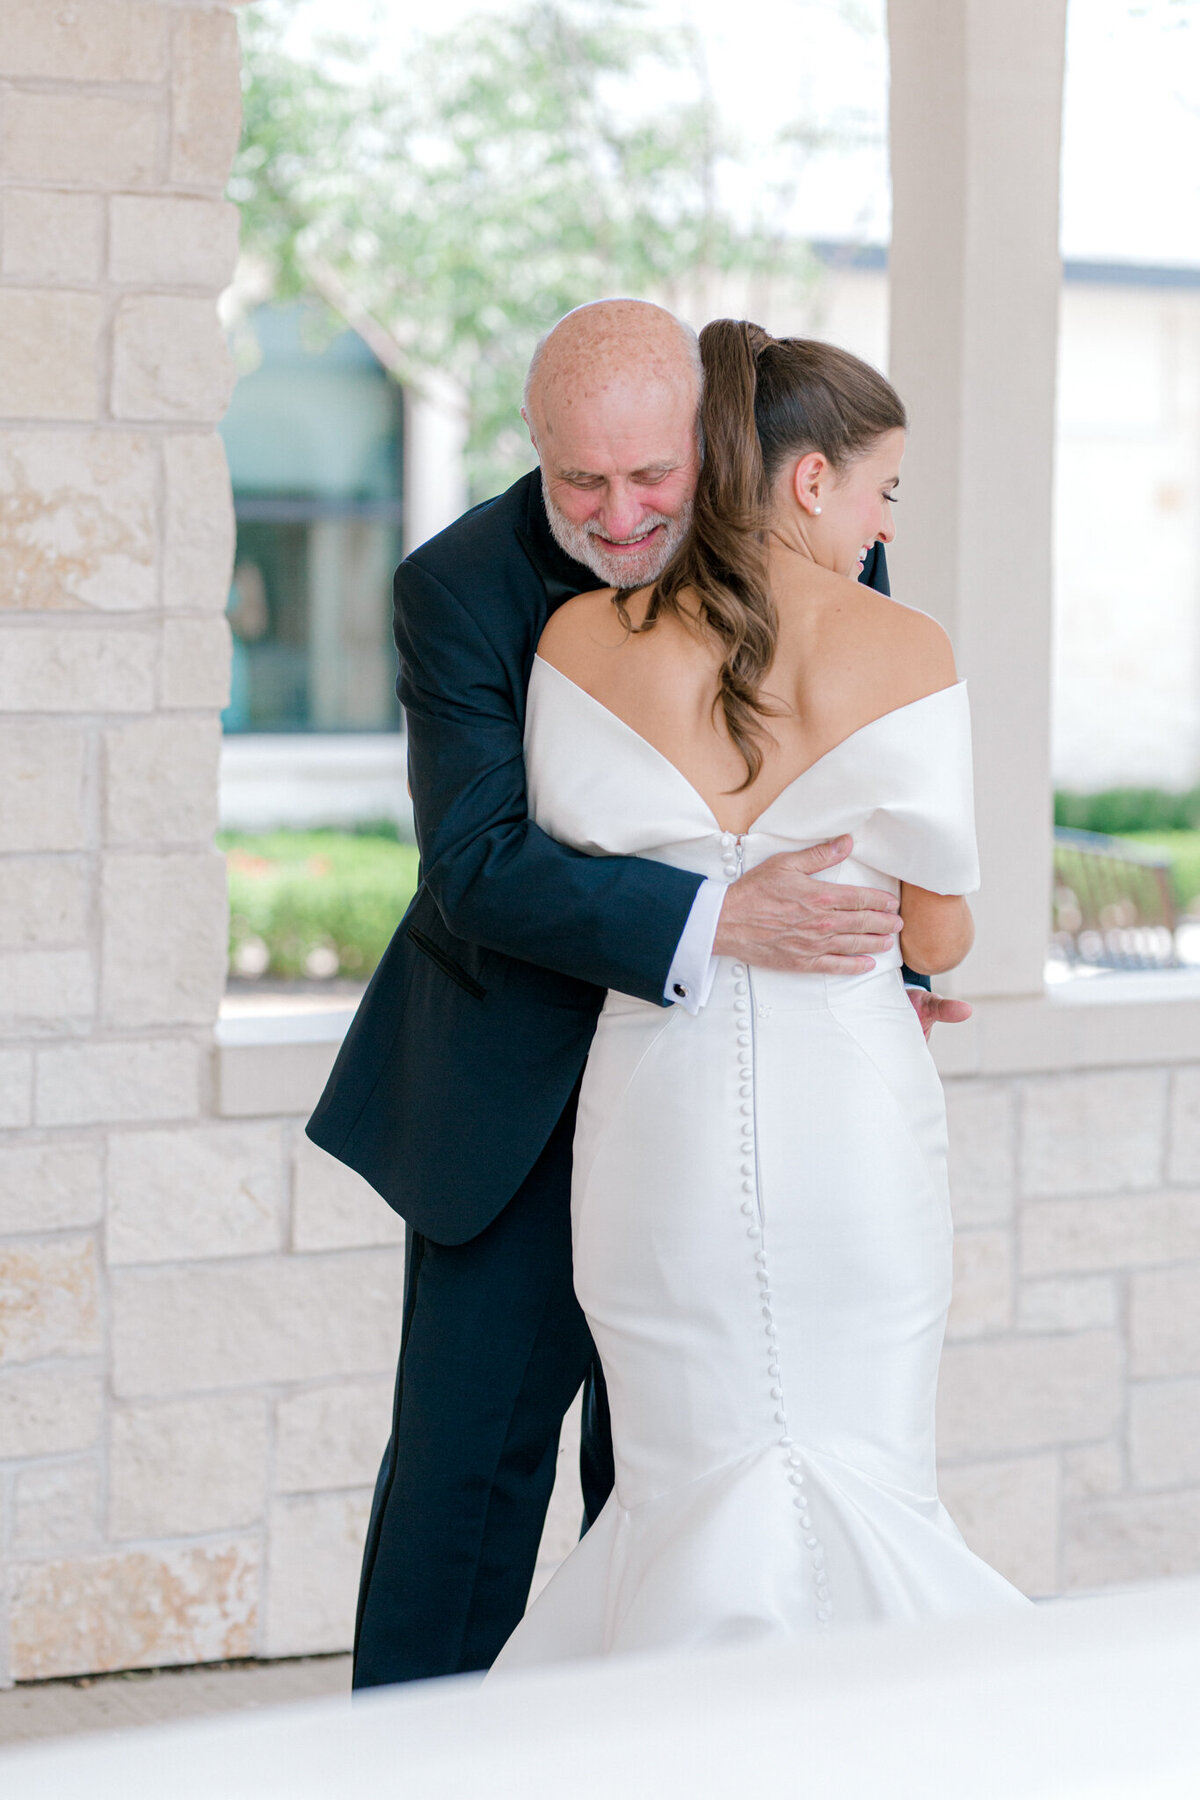 Annie & Logan's Wedding | Dallas Wedding Photographer | Sami Kathryn Photography-53